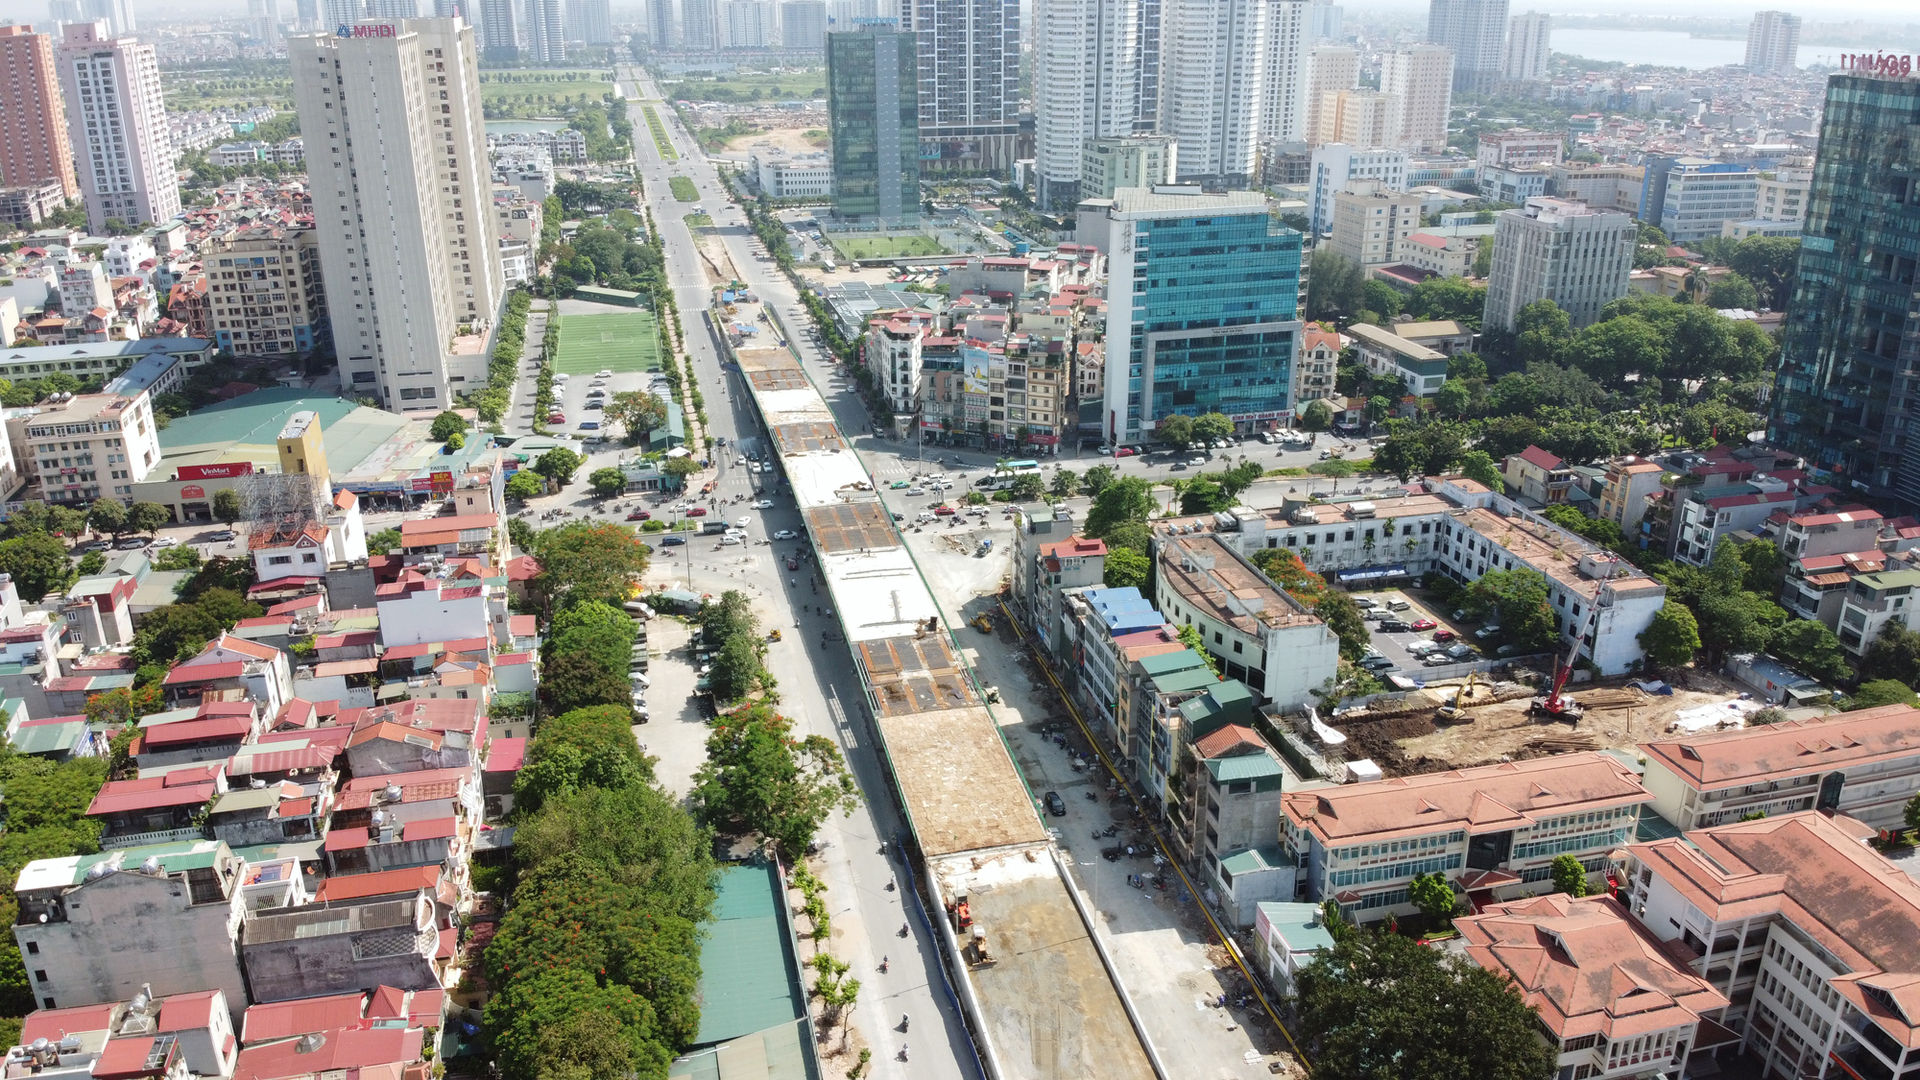 Đặc biệt khu vực nút giao Hoàng Quốc Việt - Nguyễn Văn Huyên đang thi công cầu vượt có nhiều dự án chung cư trong khoảng bán kính 1 km. 